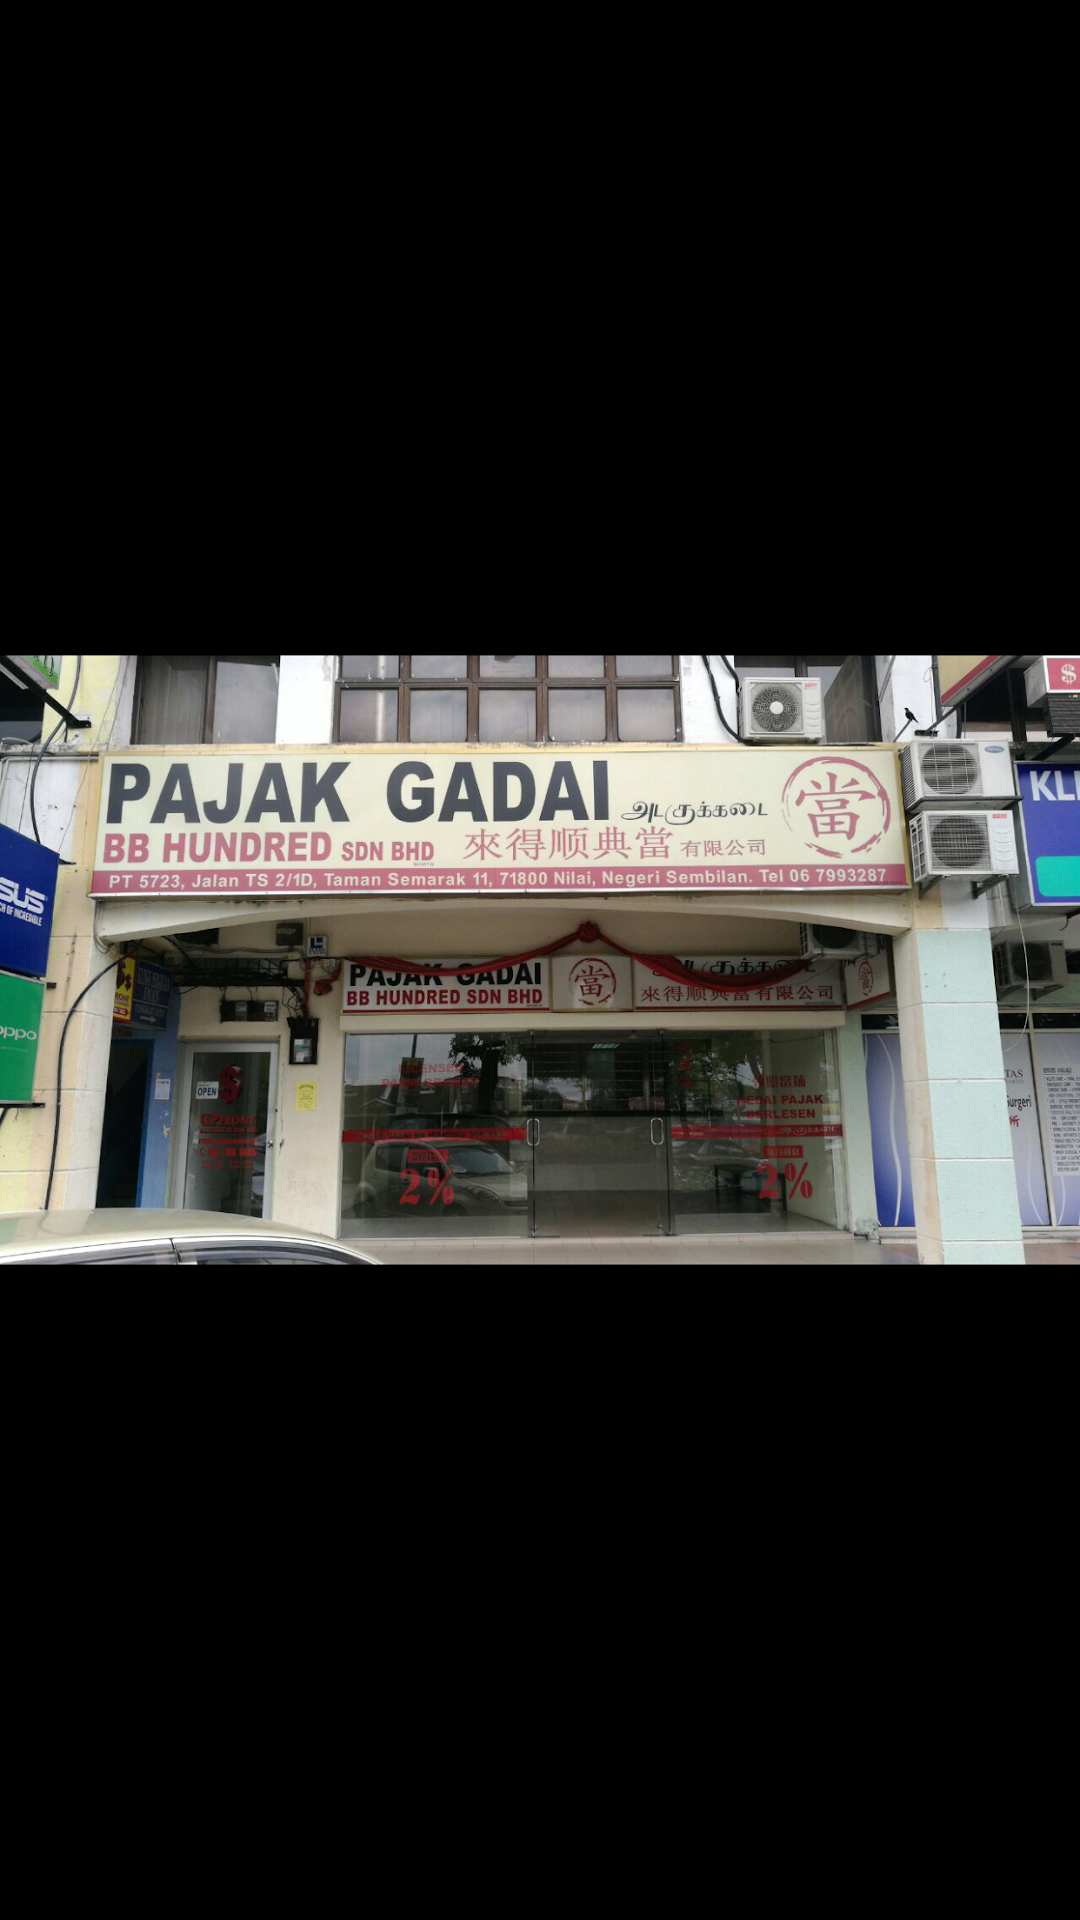 Pajak Gadai Bb Hundred Sdn Bhd